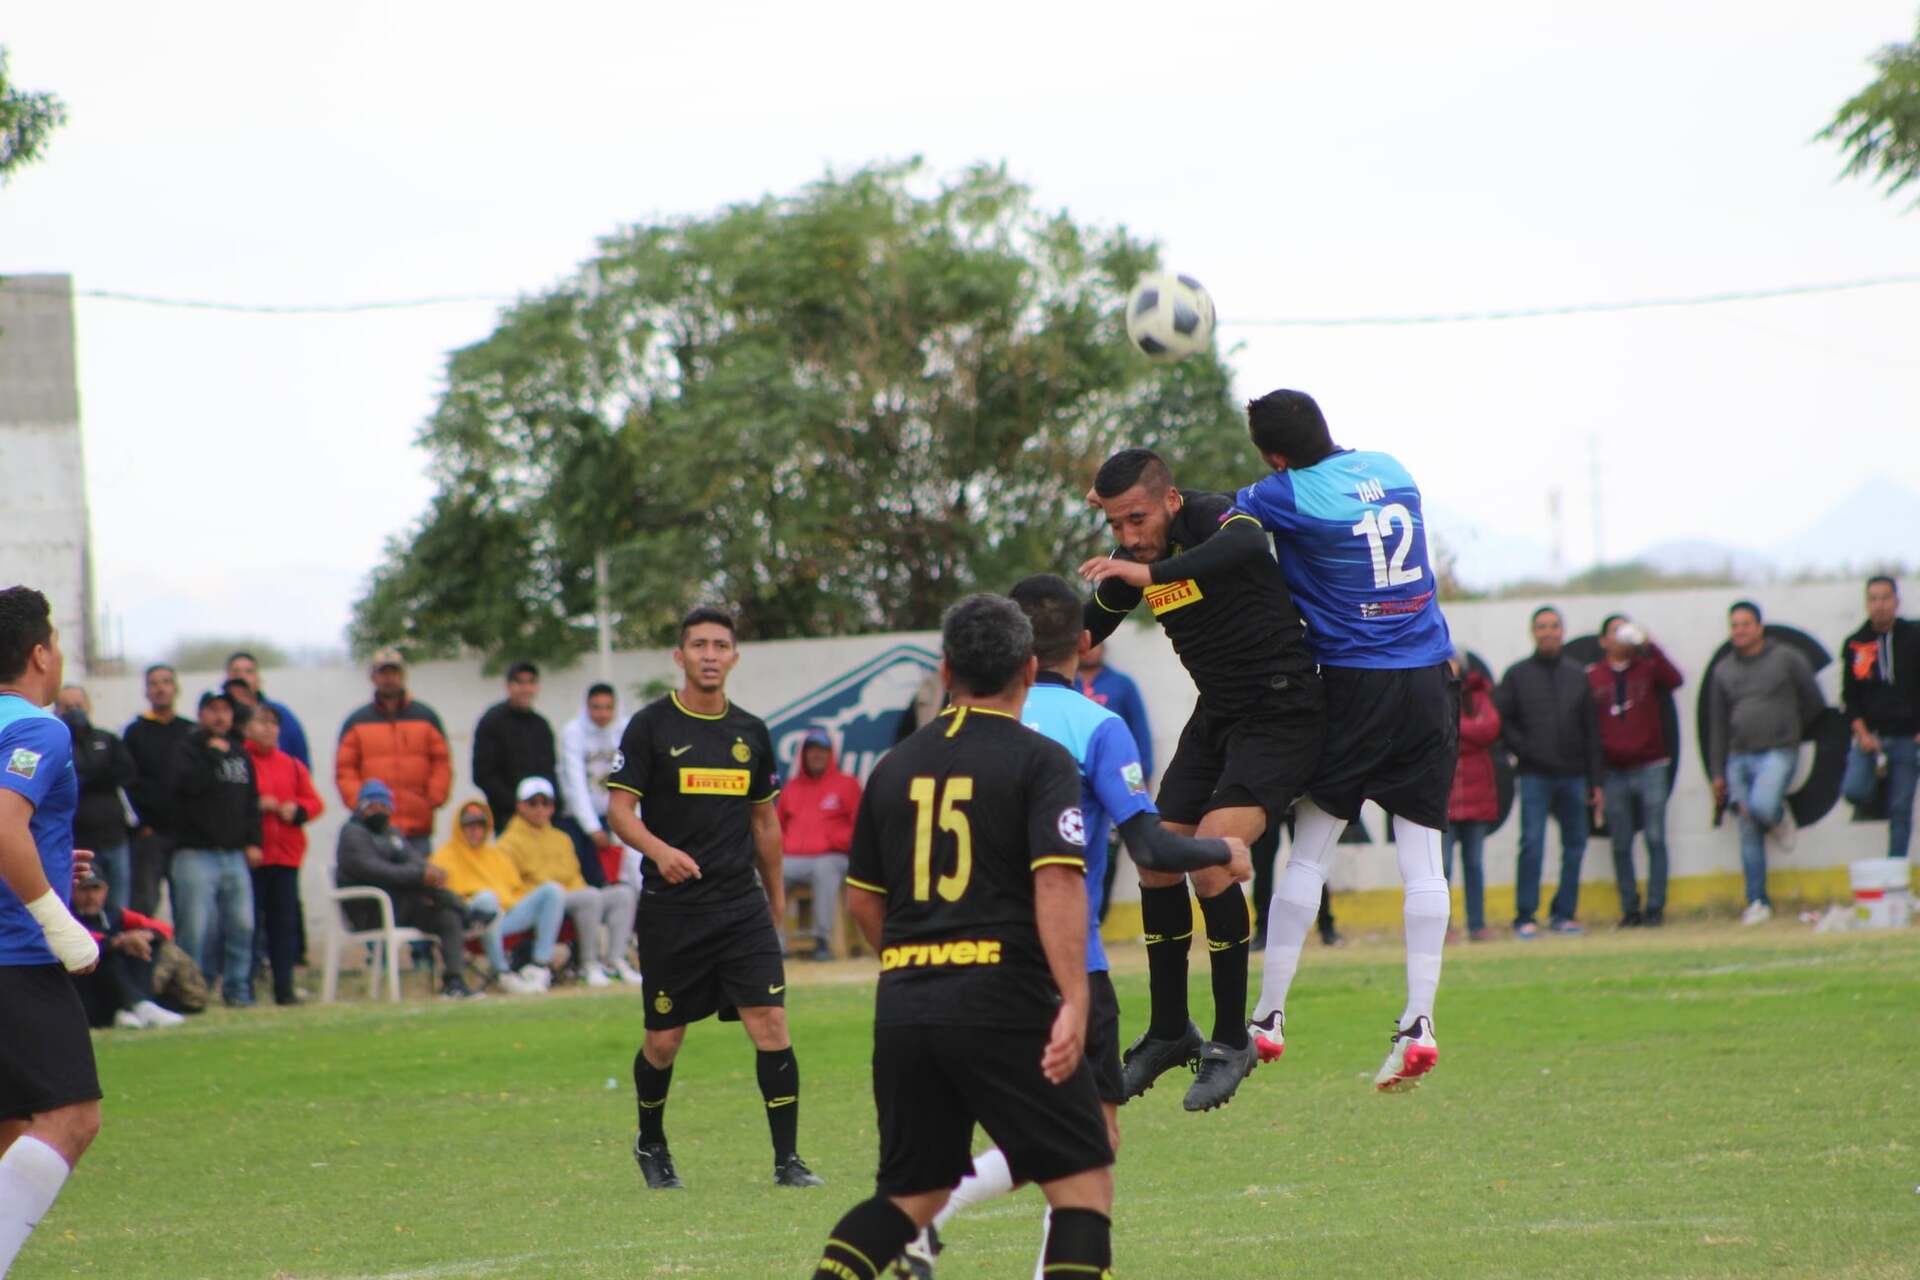 La nueva categoría en la Liga IDEAL Laguna de futbol soccer amateur, está destinada para jugadores mayores de 40 años. (ELITE DEPORTIVA)